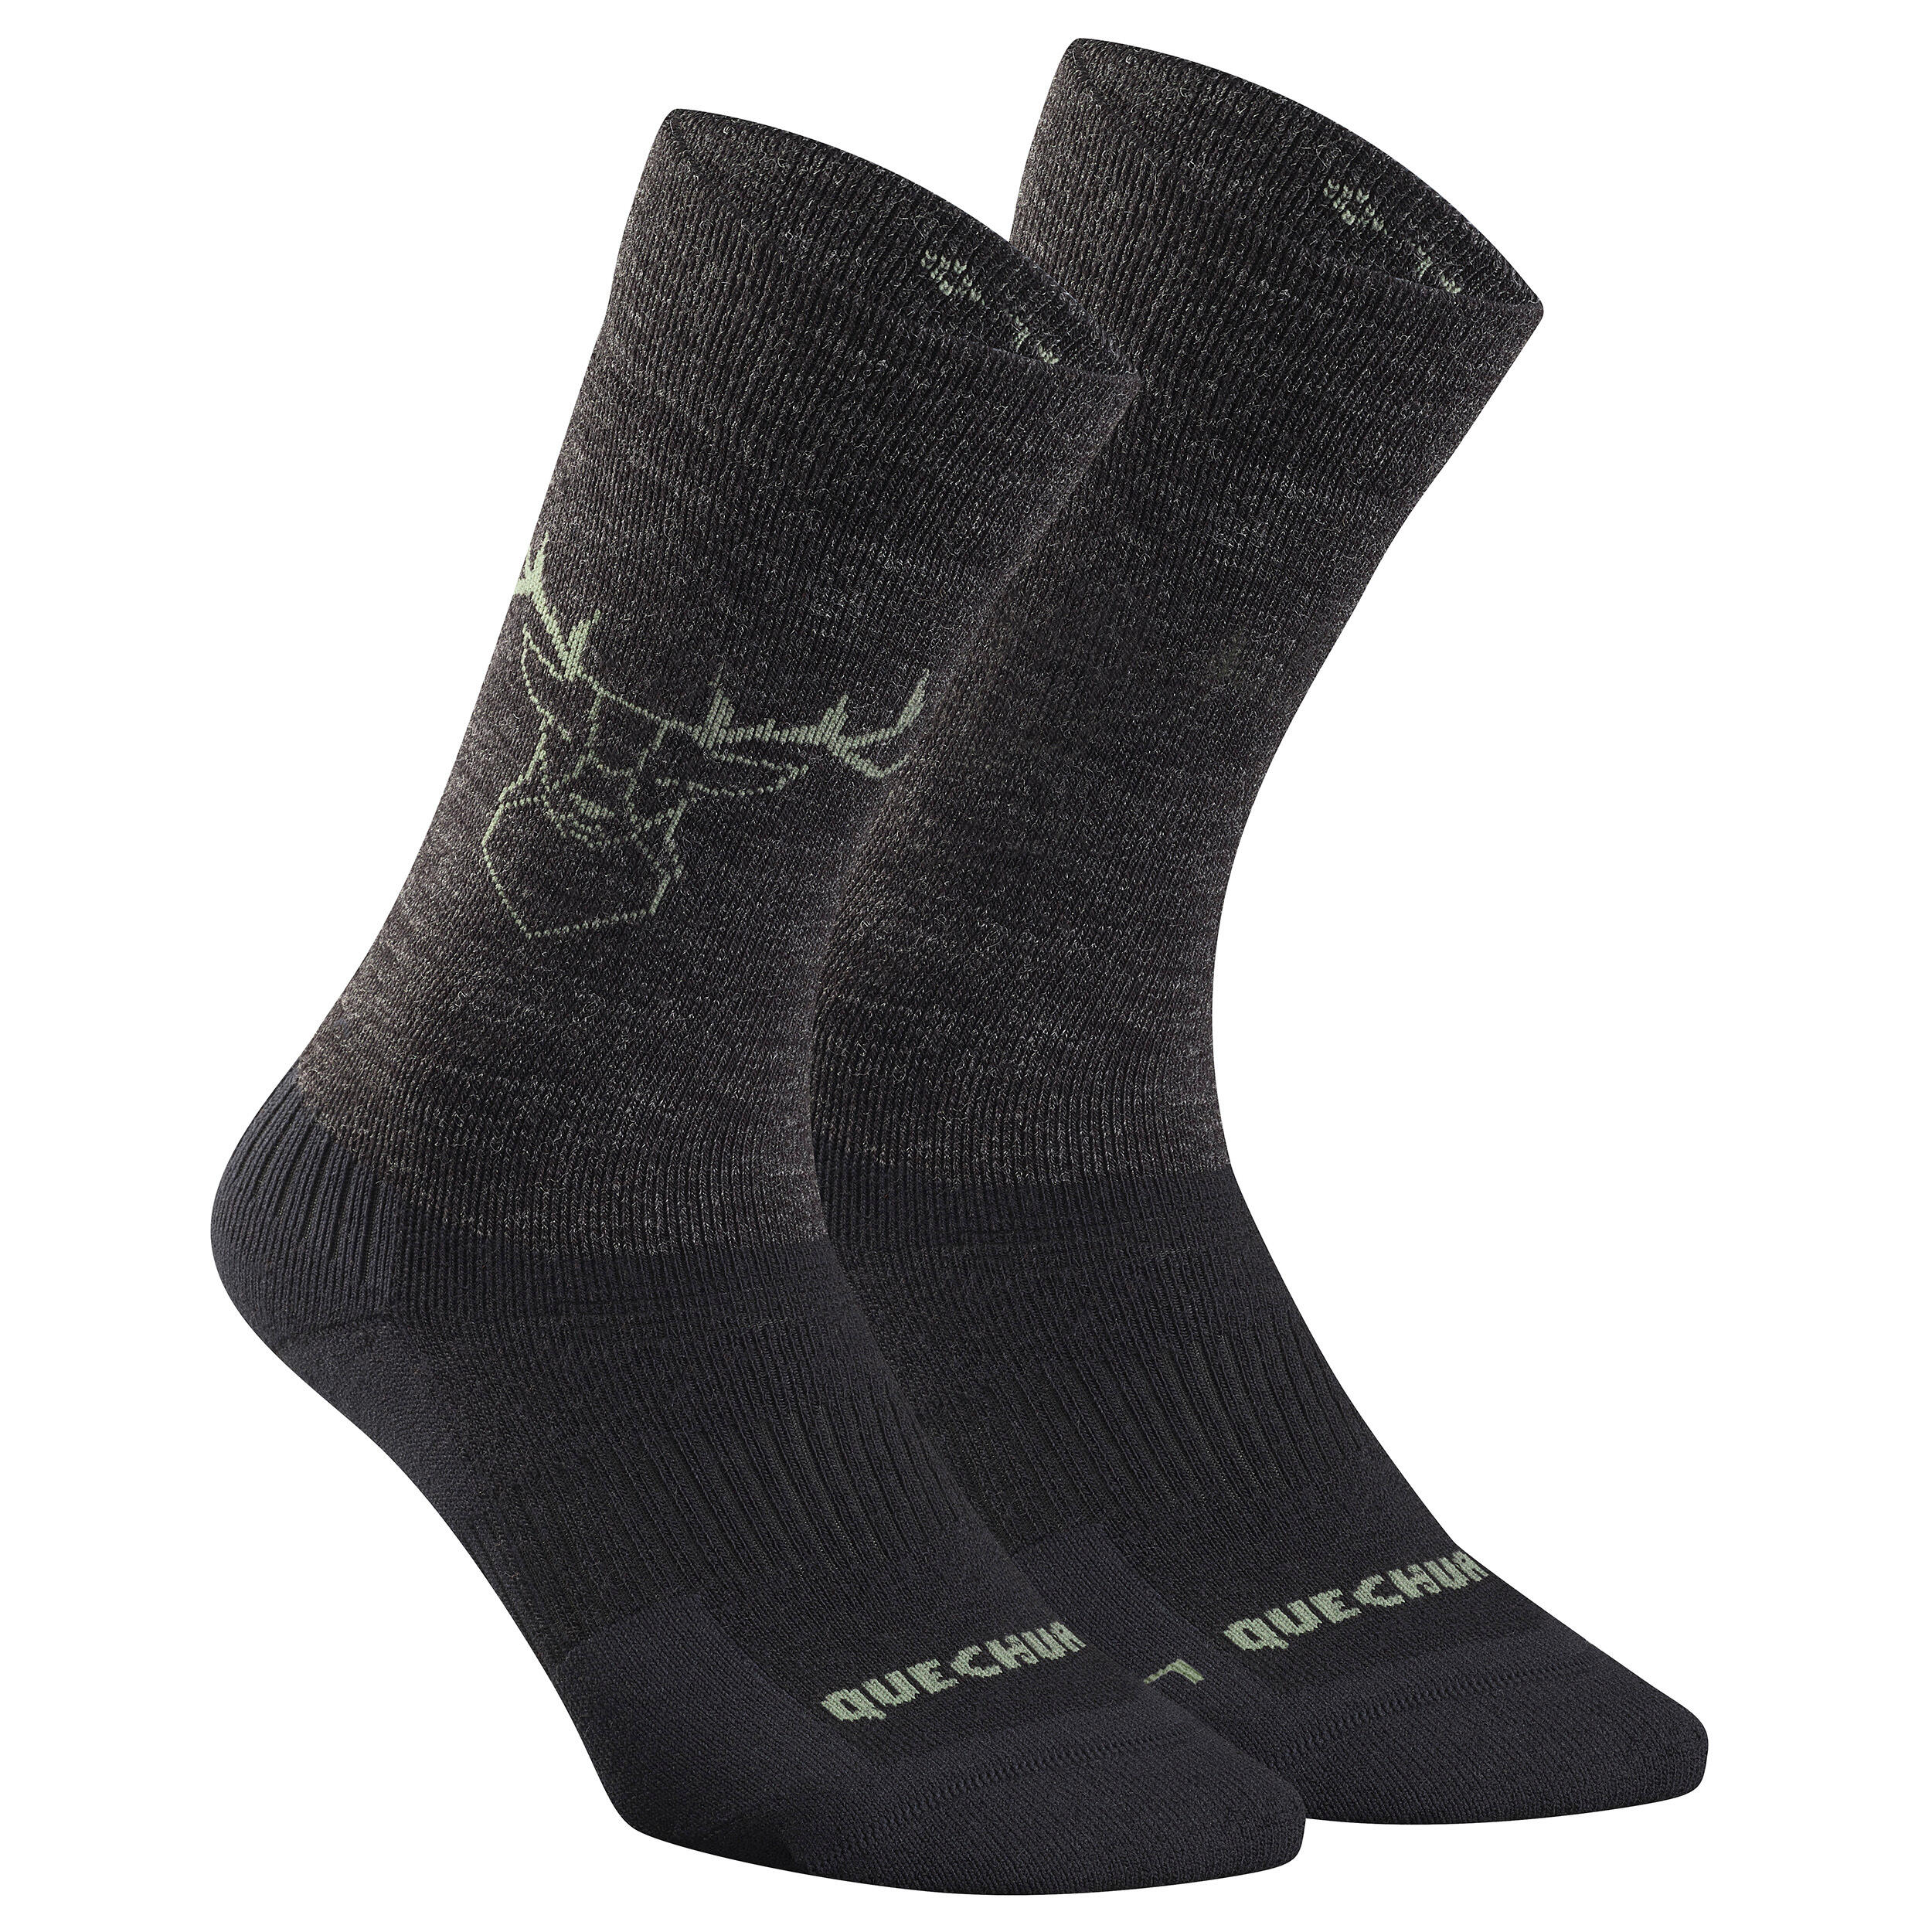 Warm  Hiking Socks - SH500 ULTRA-WARM MID - 2 Pairs 2/7